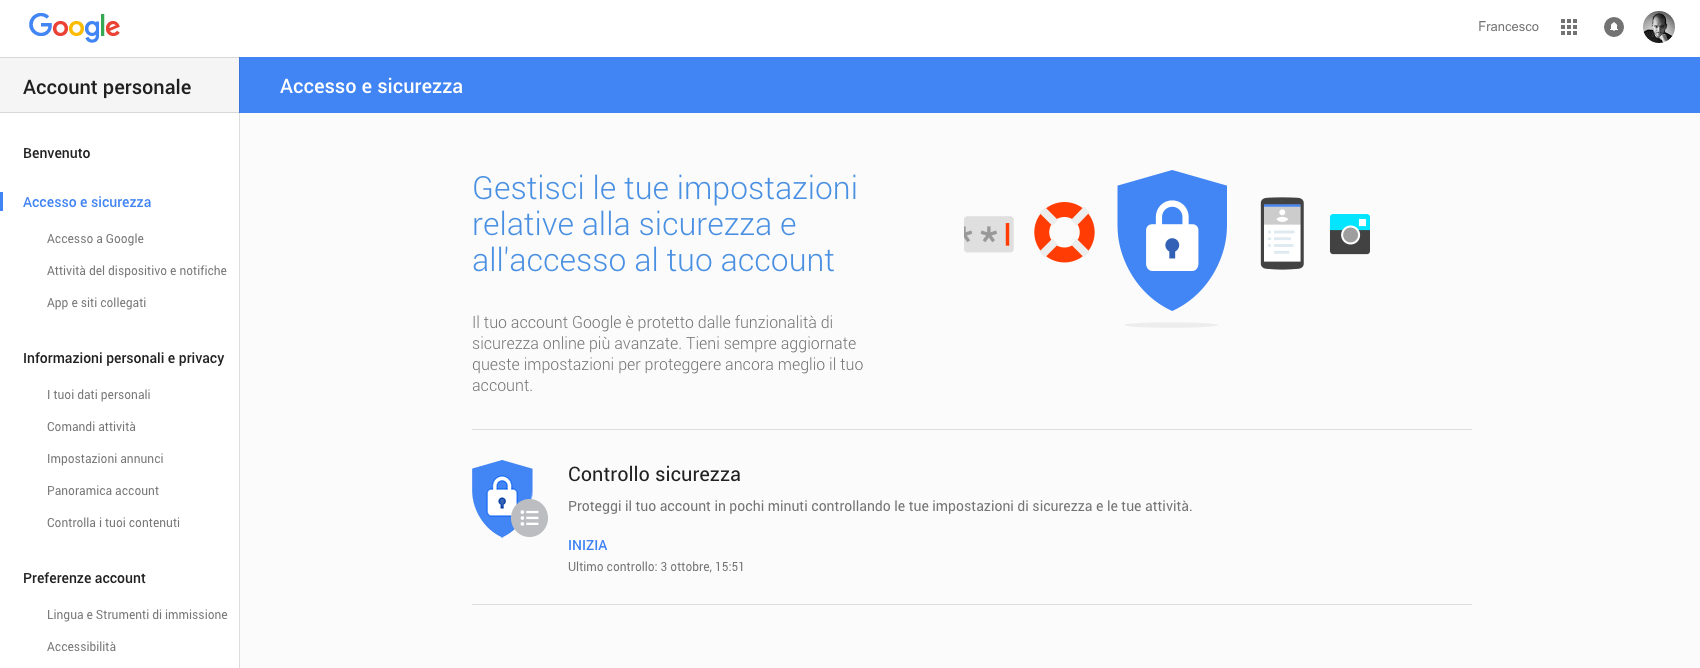 Google account e sicurezza